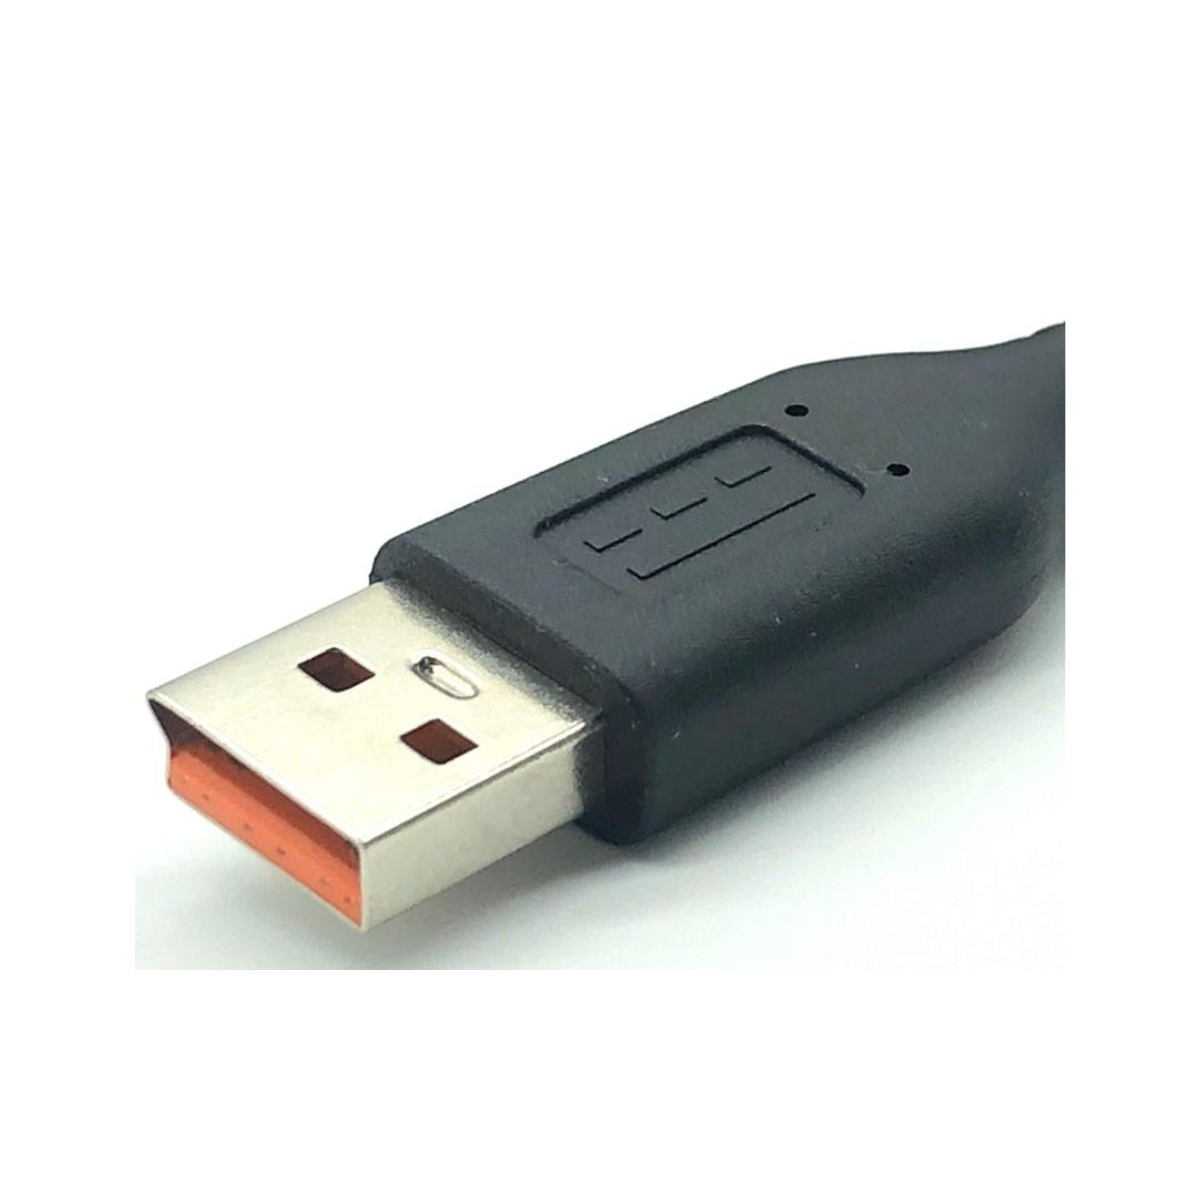 CARGADOR MICRO USB 2A - Jaltech SAS